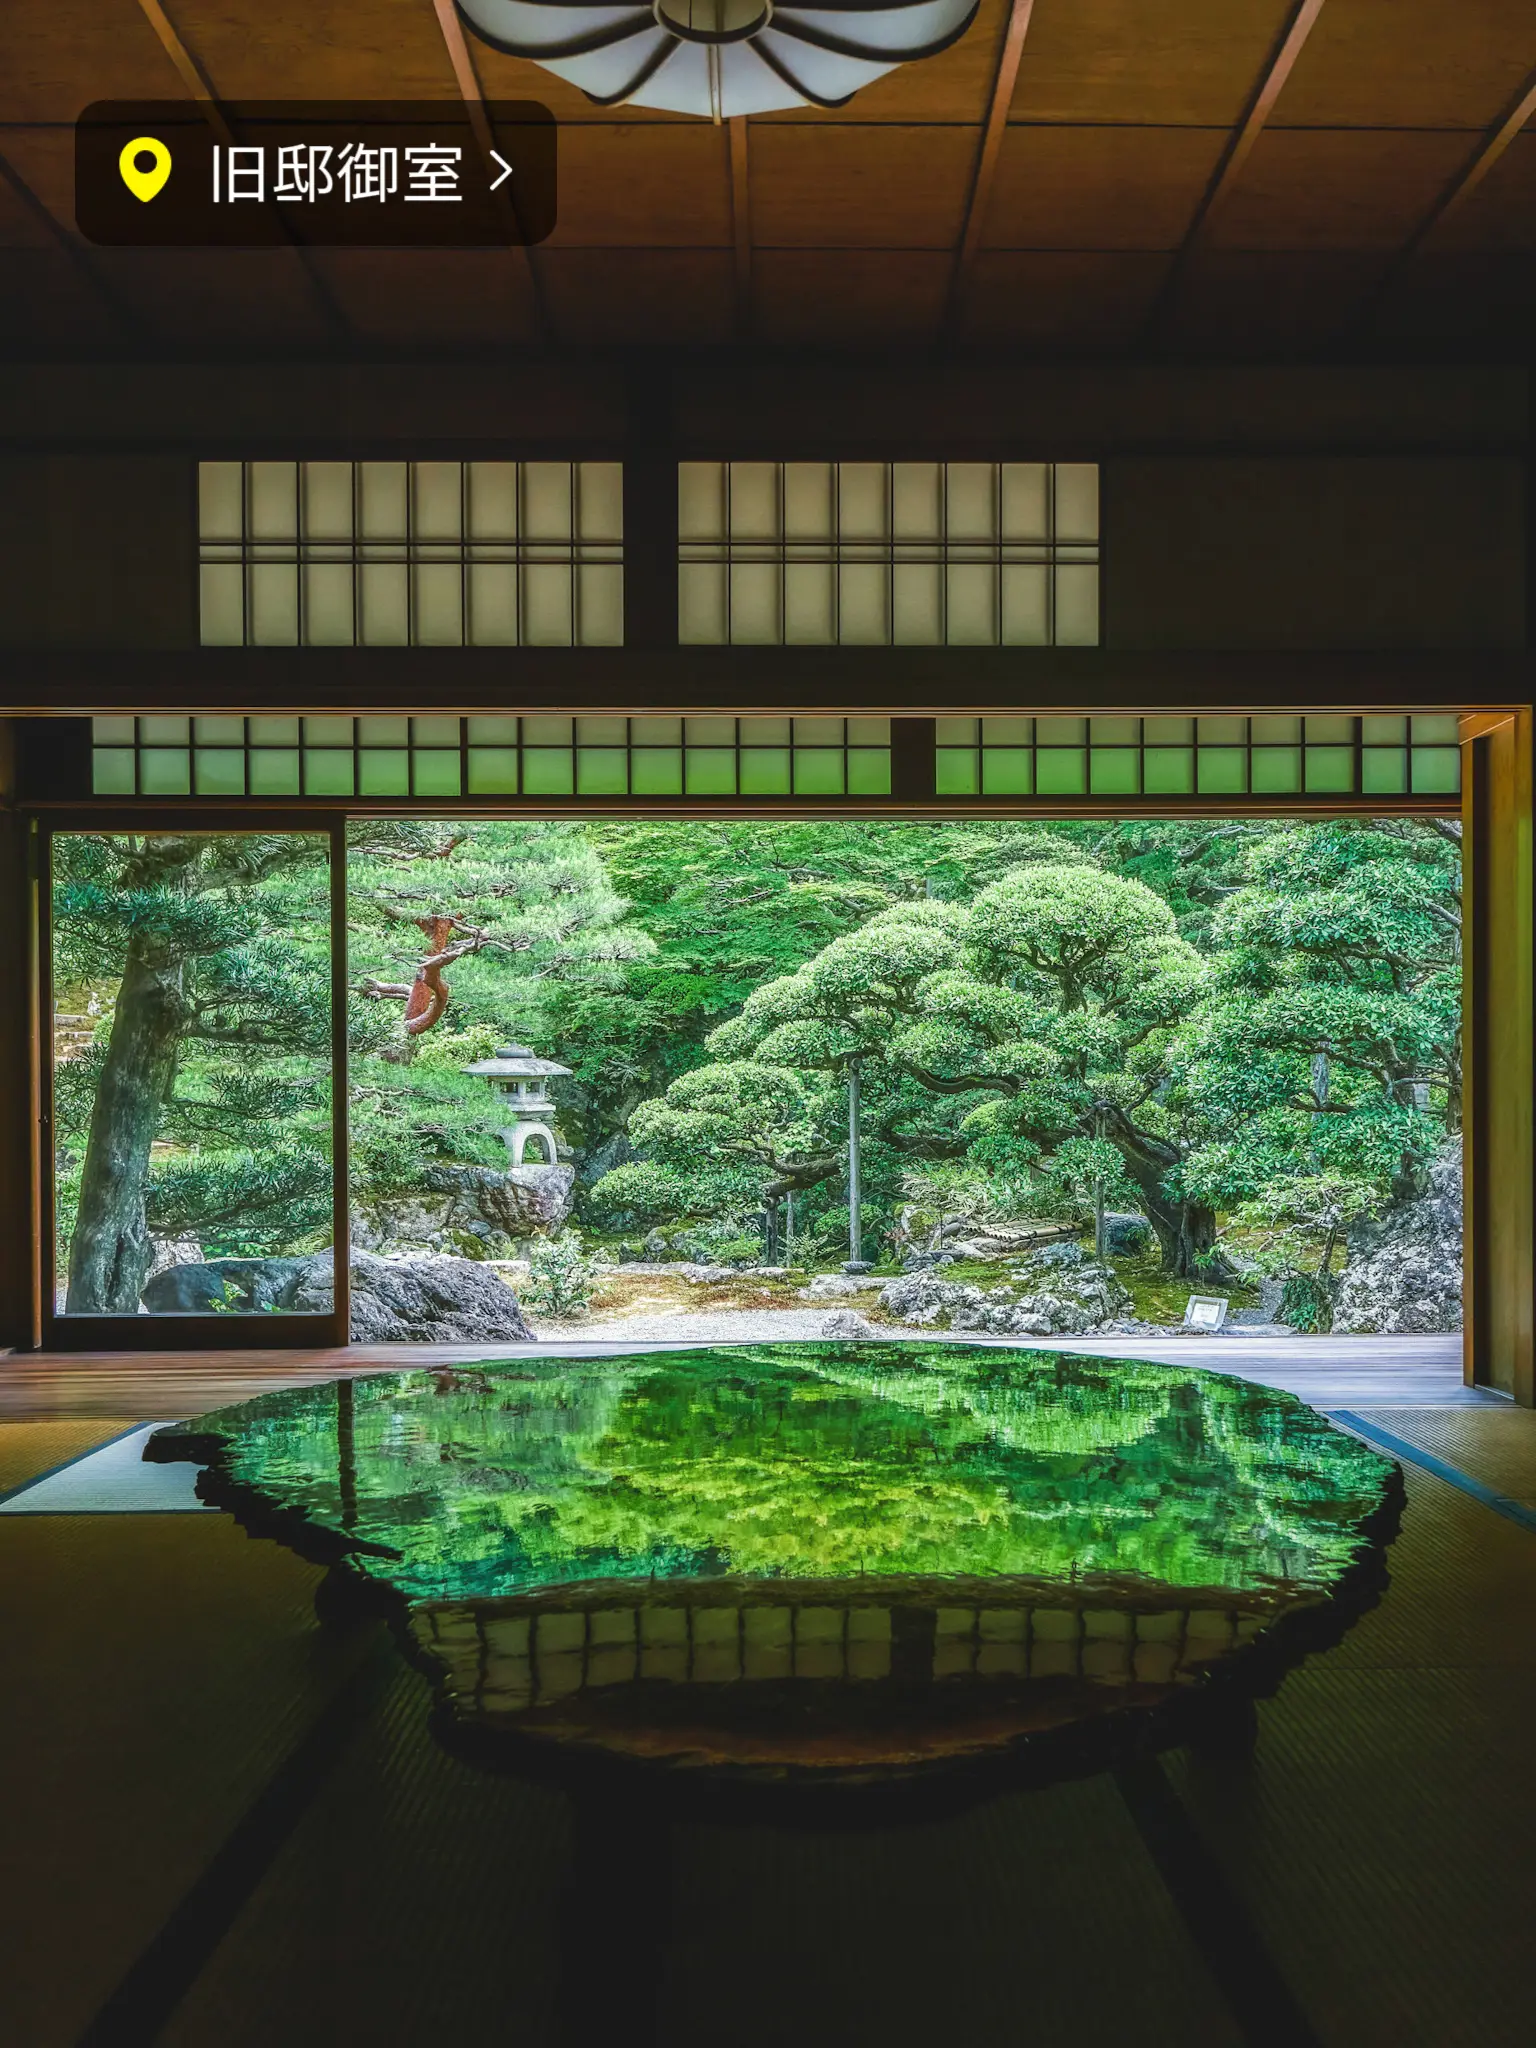 期間限定公開】絵画のような庭園 旧邸御室 (京都) | bird_癒しと幻想の ...